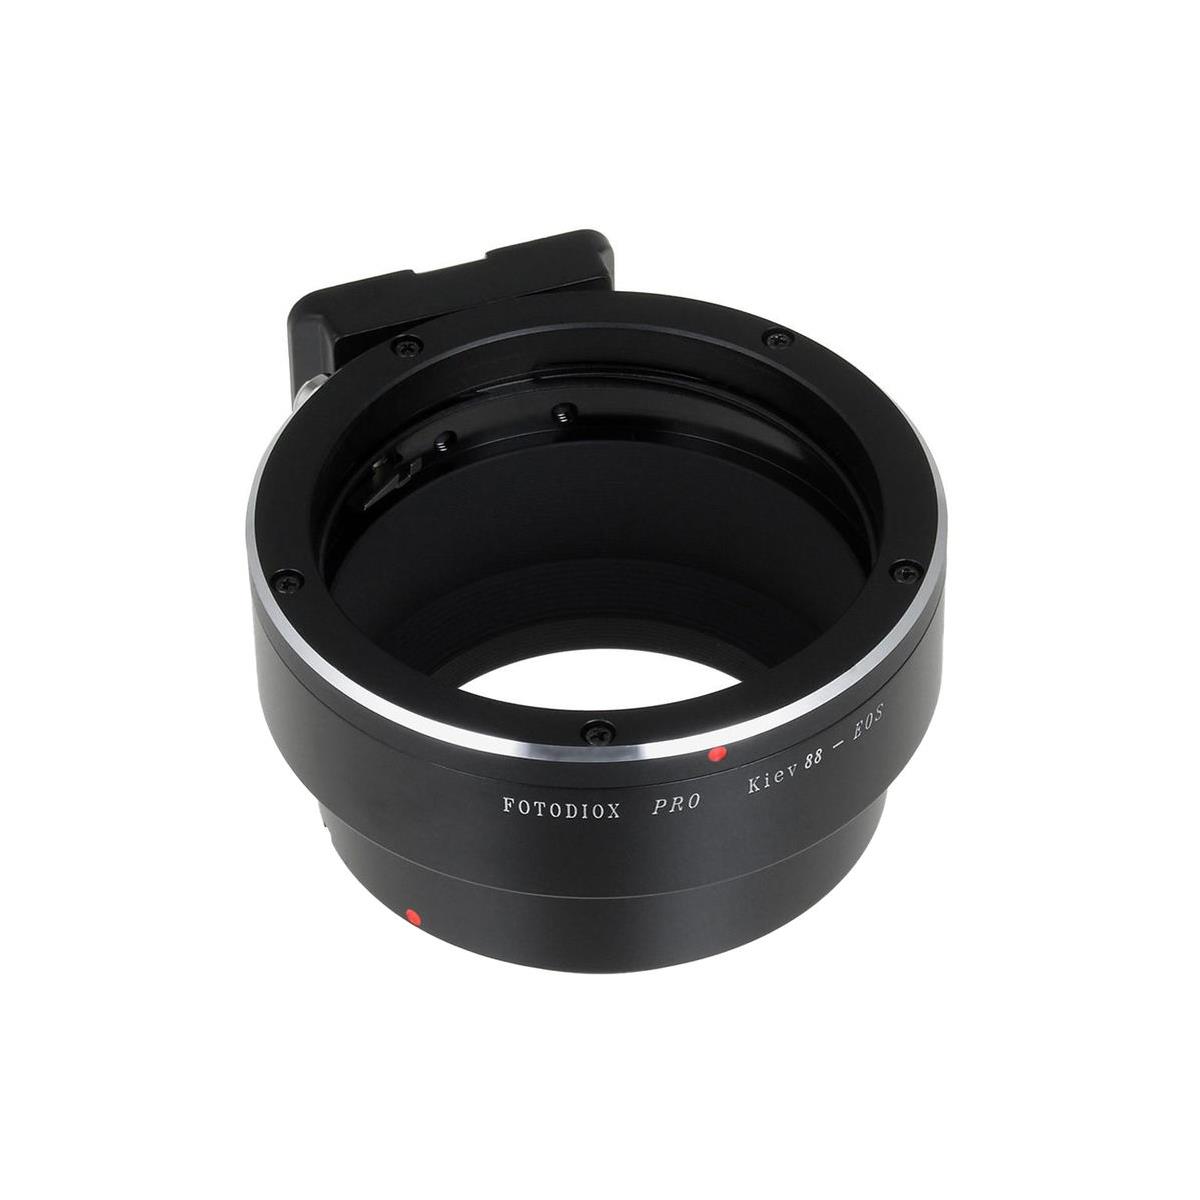 Image of Fotodiox Pro Lens Mount Adapter for Kiev 88 SLR Lens to Canon EF/EF-S SLR Camera